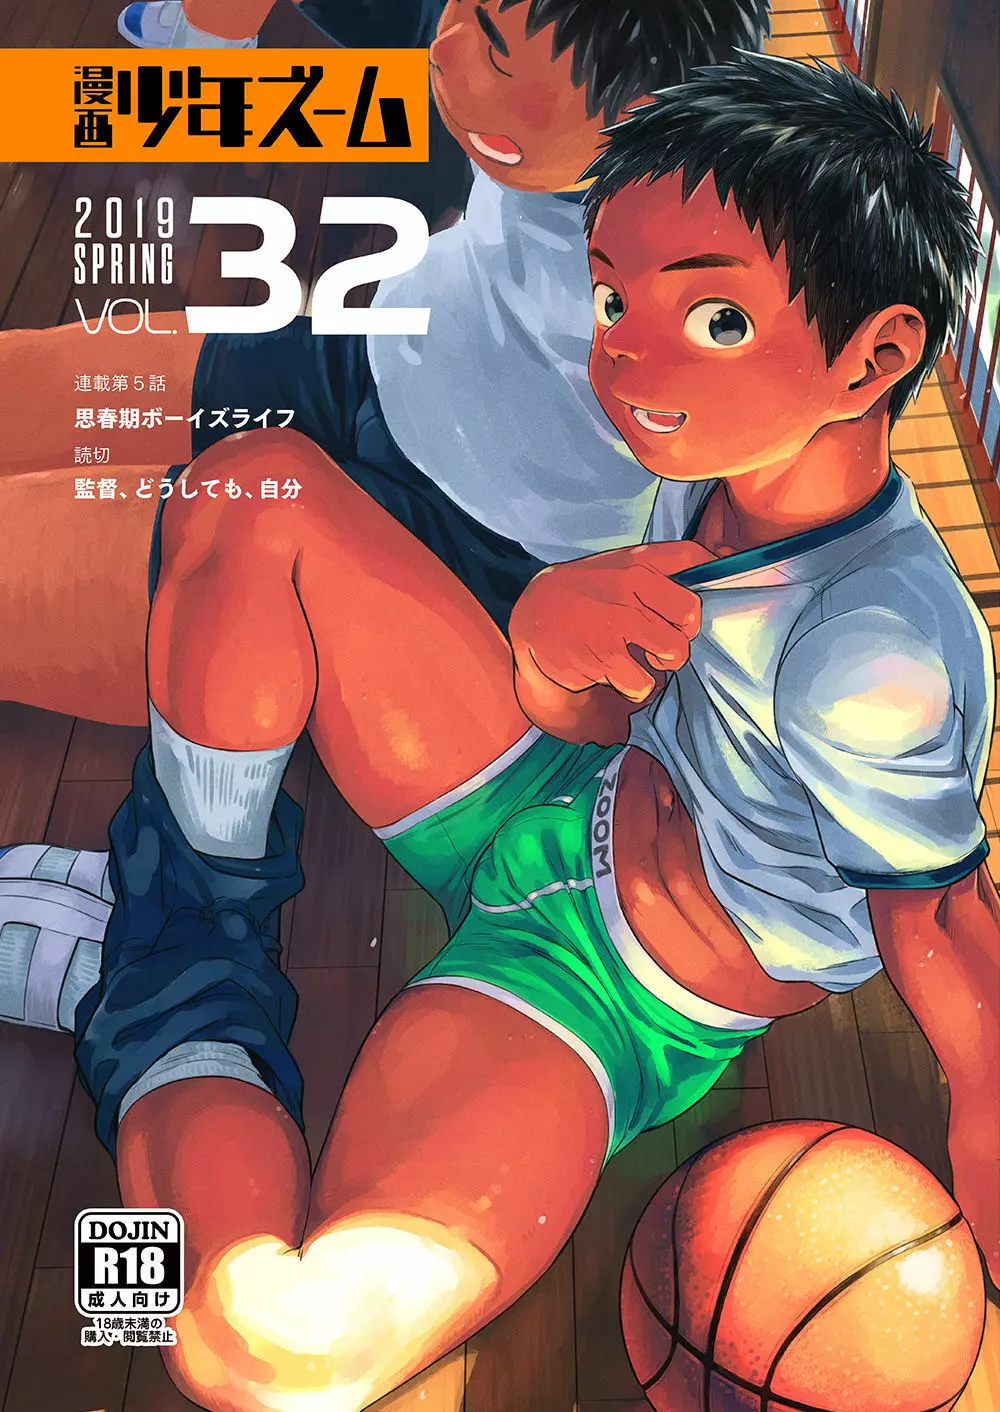 漫画少年ズーム vol.32